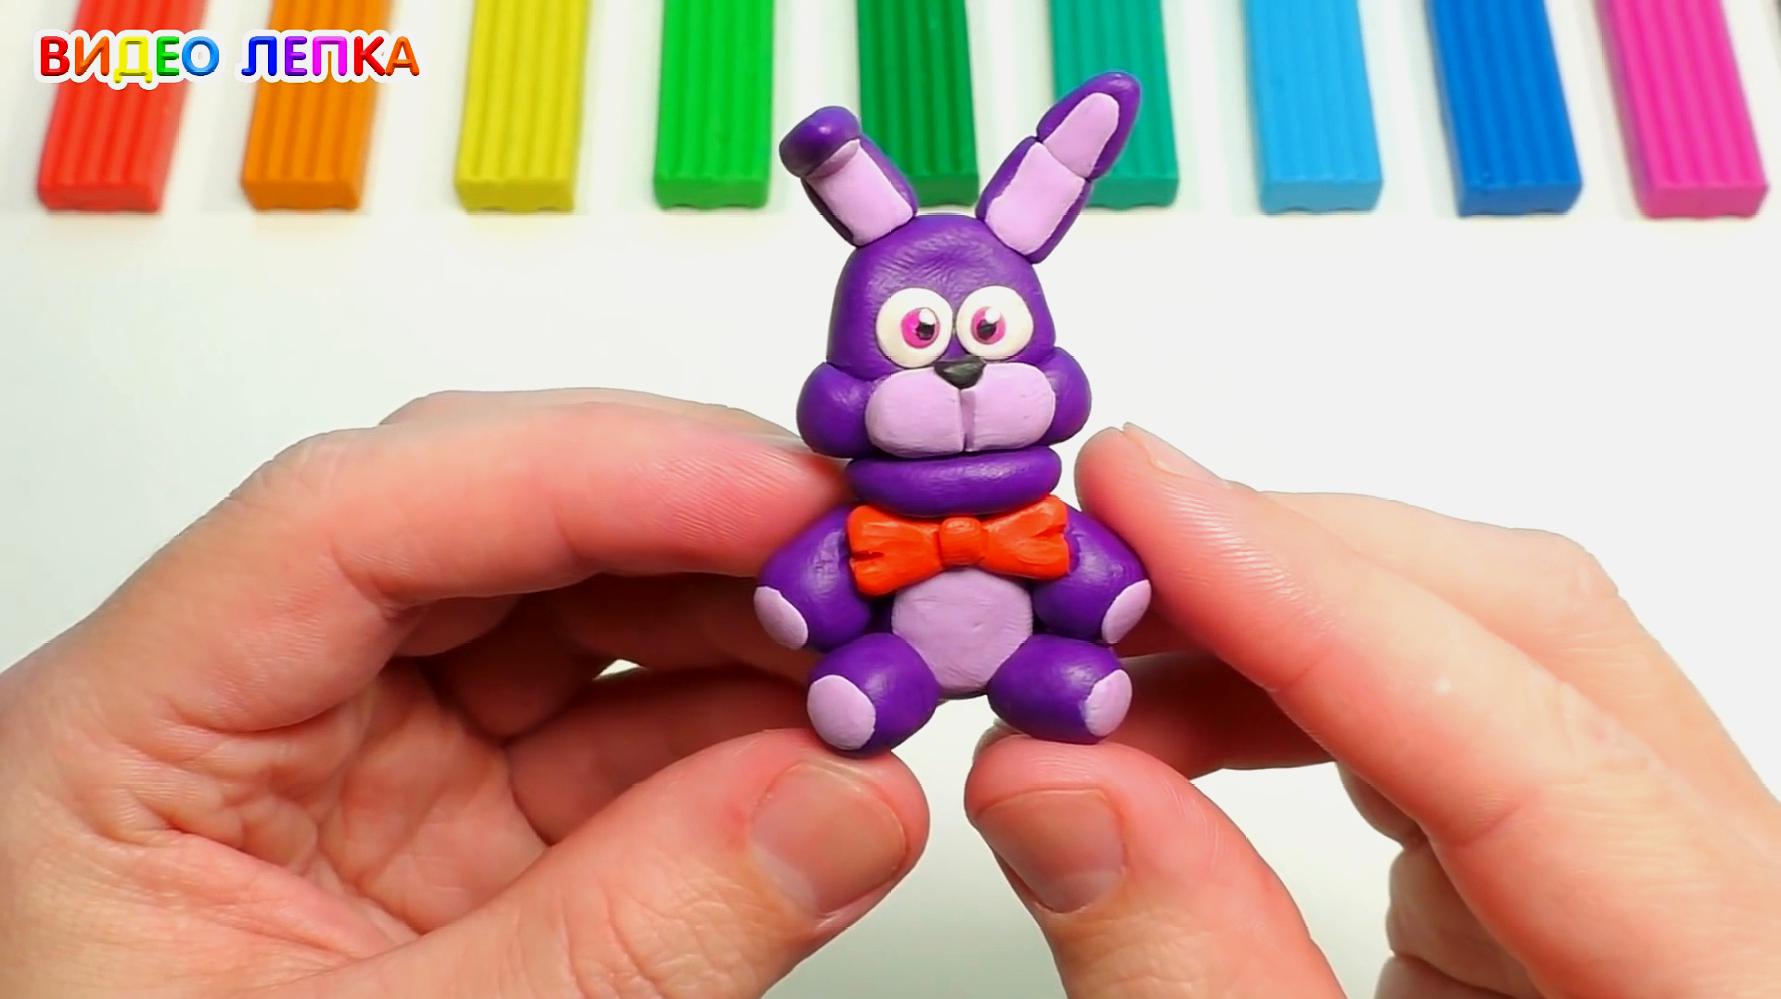 手办:用橡皮泥制作的玩具熊邦尼,这个形象真是蠢萌蠢萌的